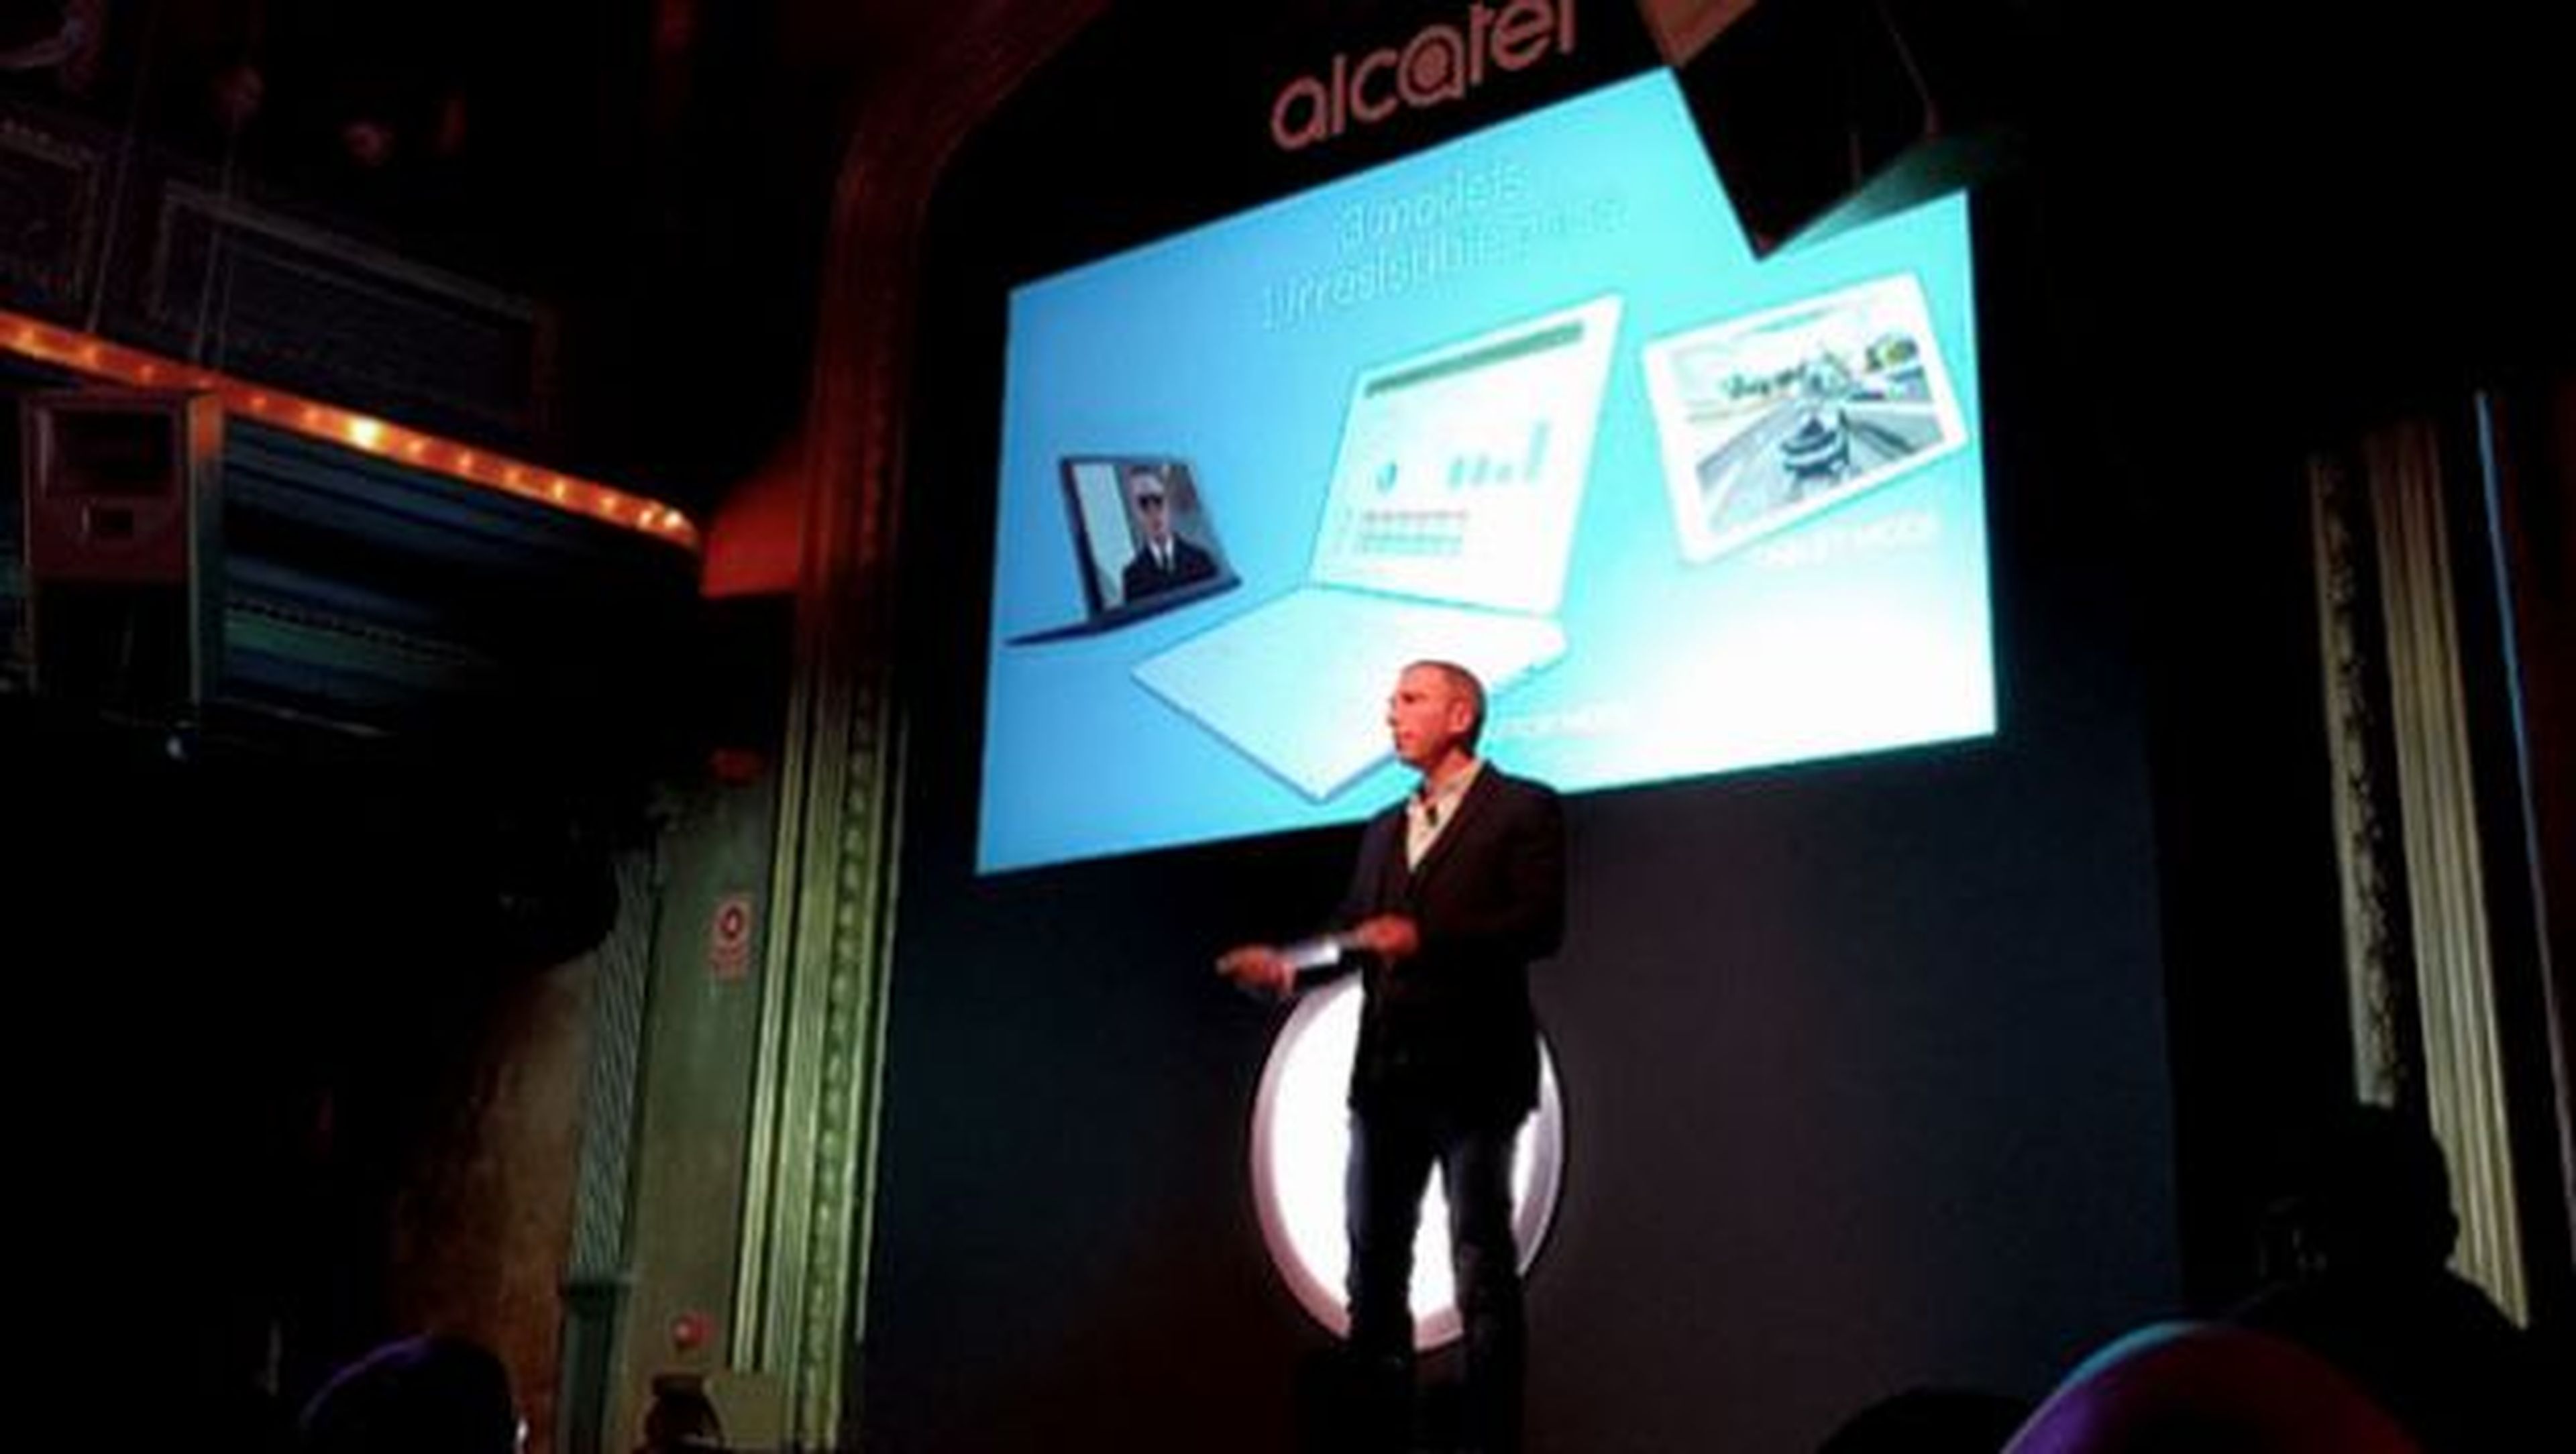 Presentación de la tablet Alcatel Plus 10 con Windows 10